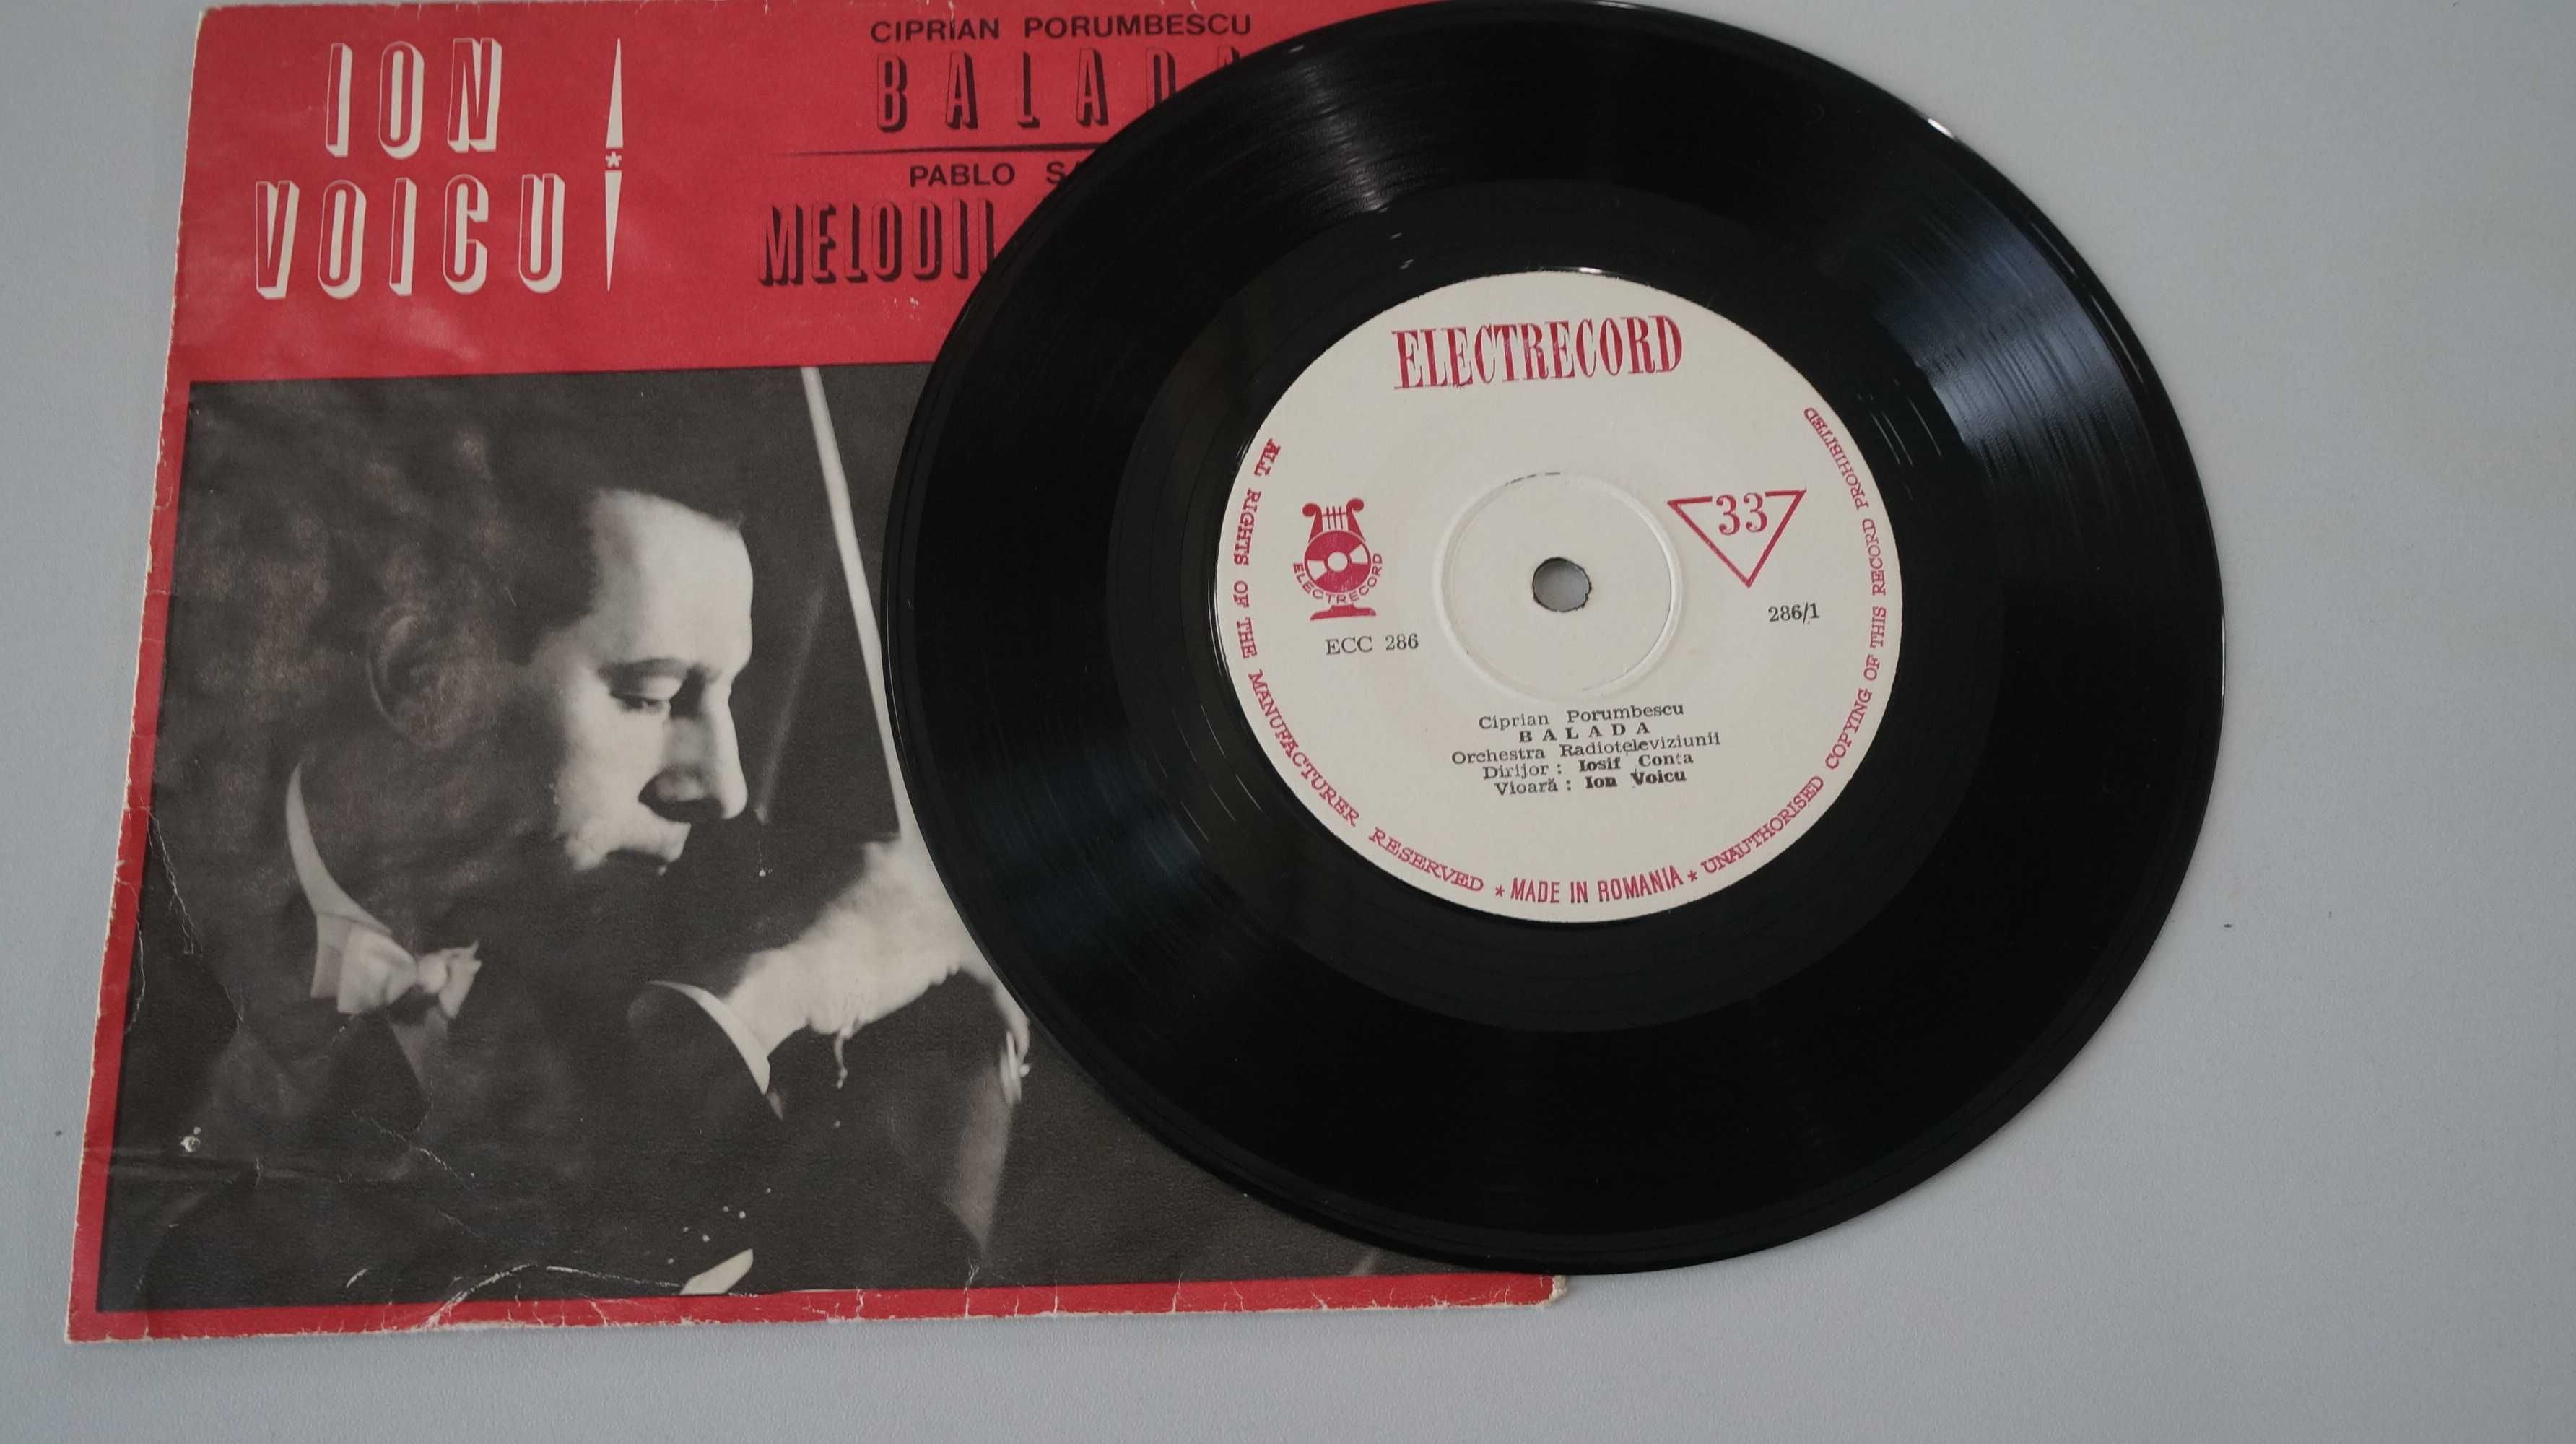 Ion Voicu (vioară) - Disc muzică lăutăreasca (Electrecord, 1966)